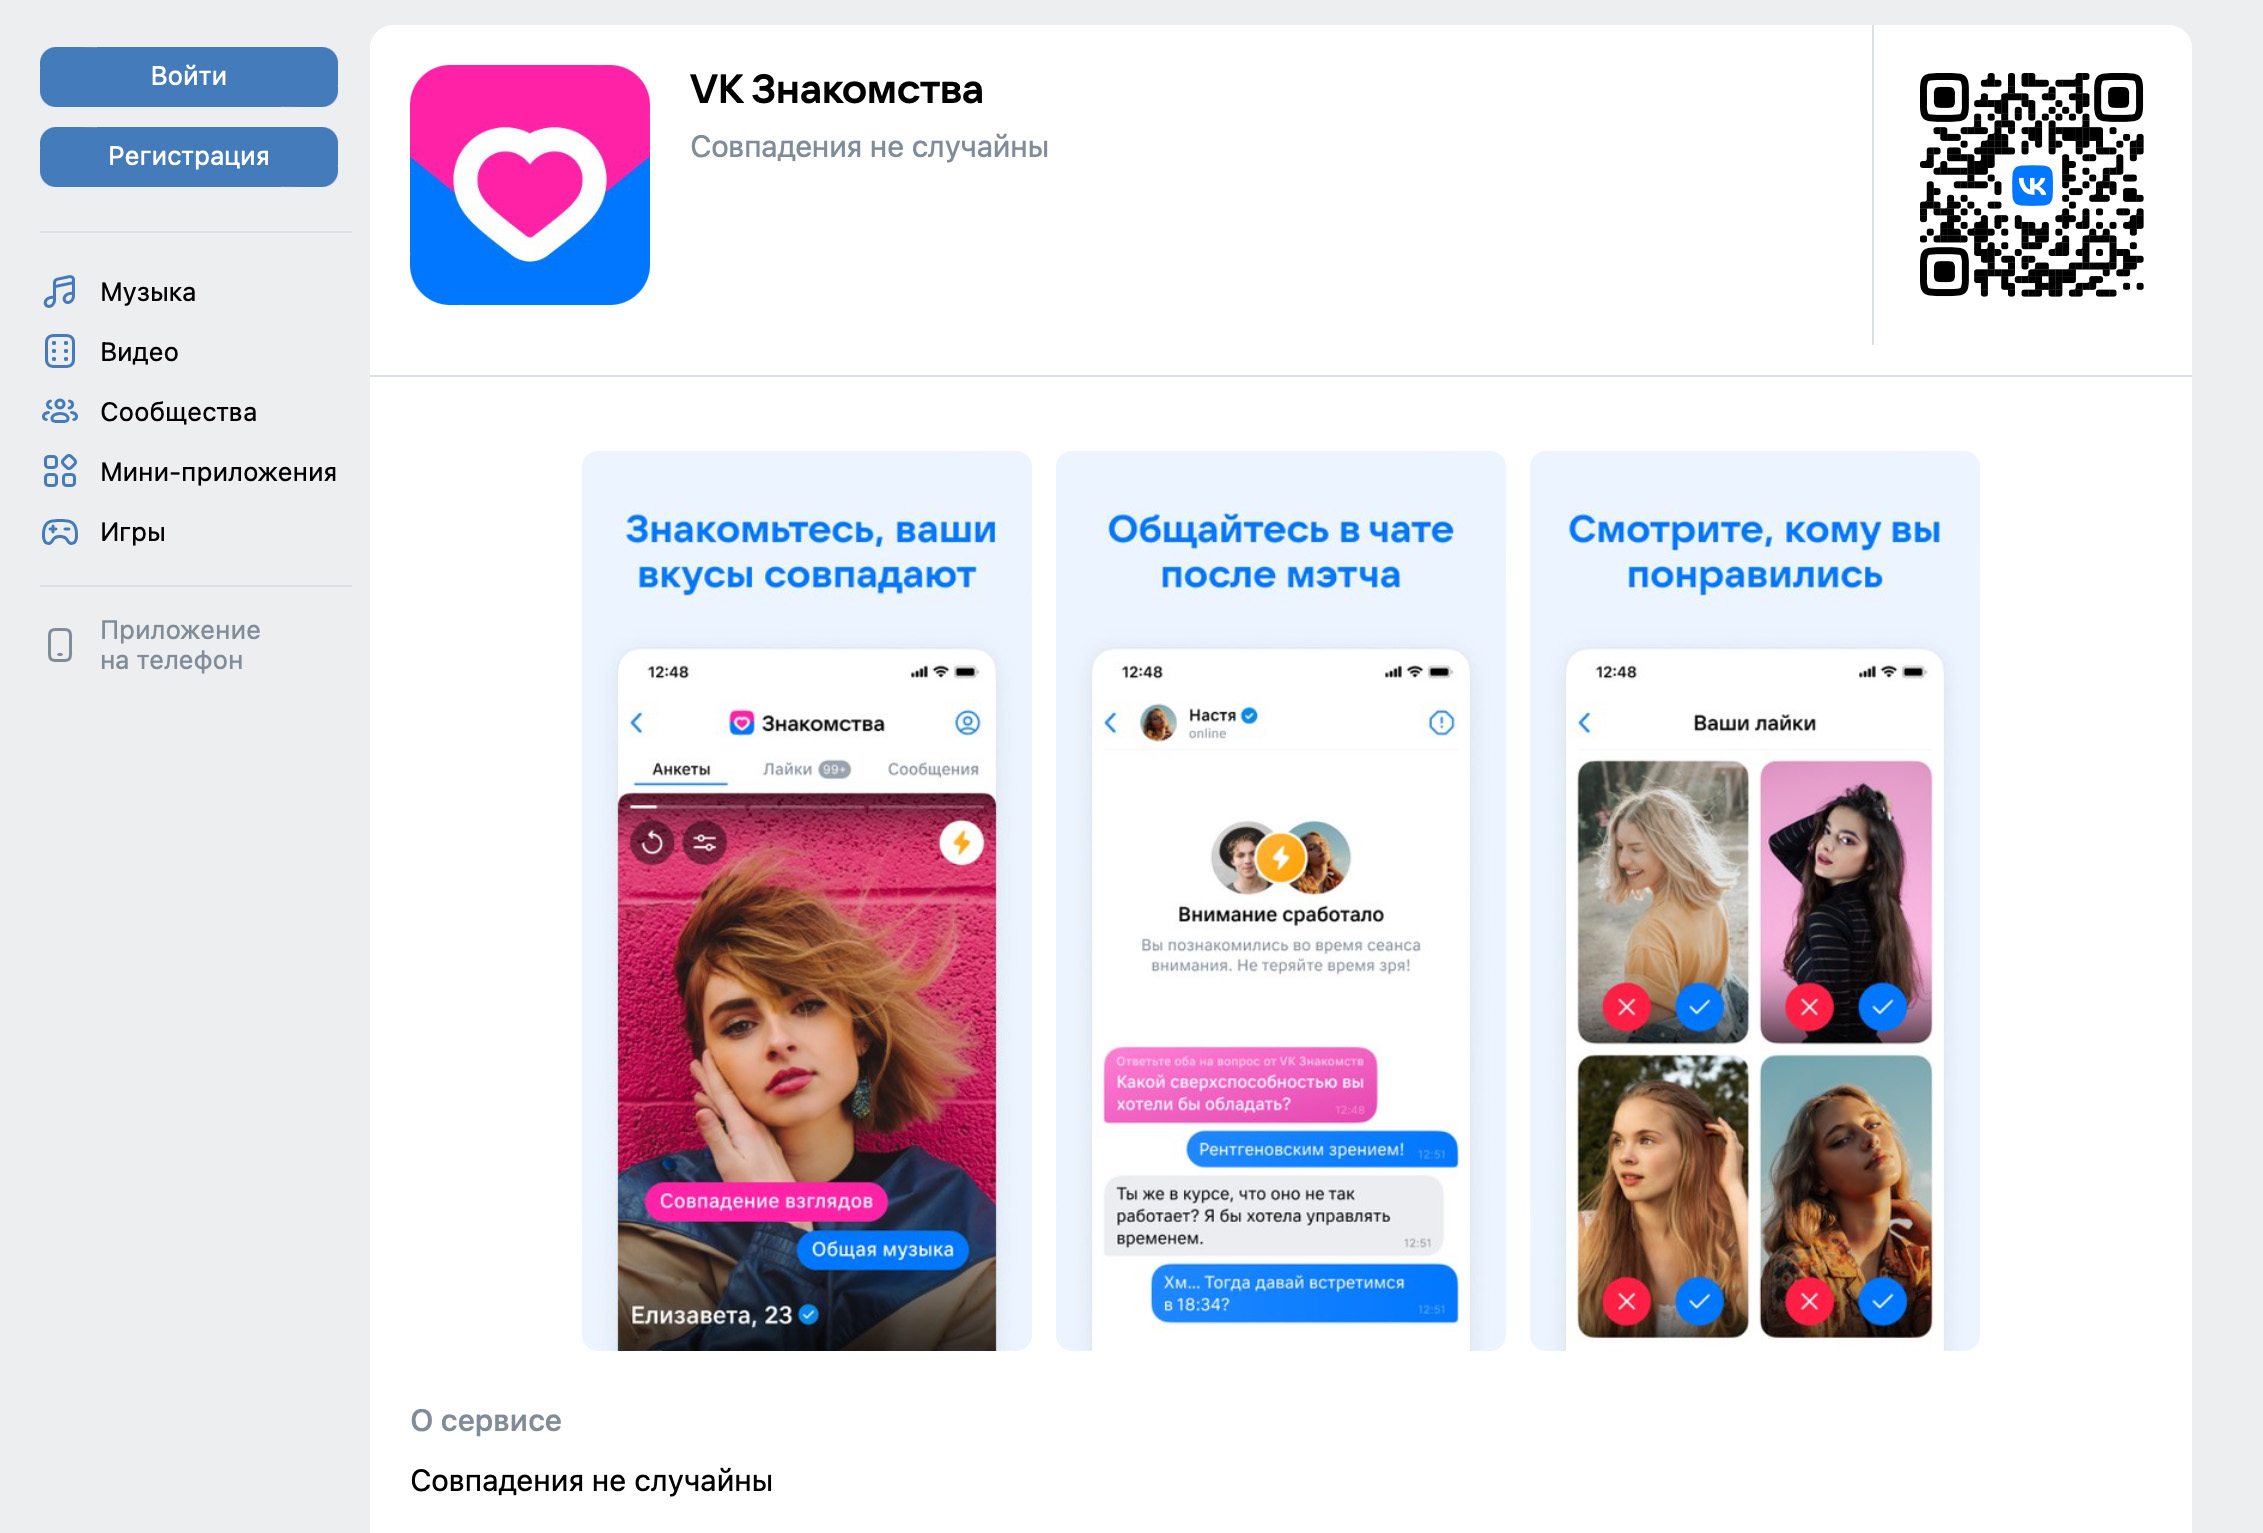 Фермы фейков. Схема развода через знакомства с фейковых женских страниц во «ВКонтакте»